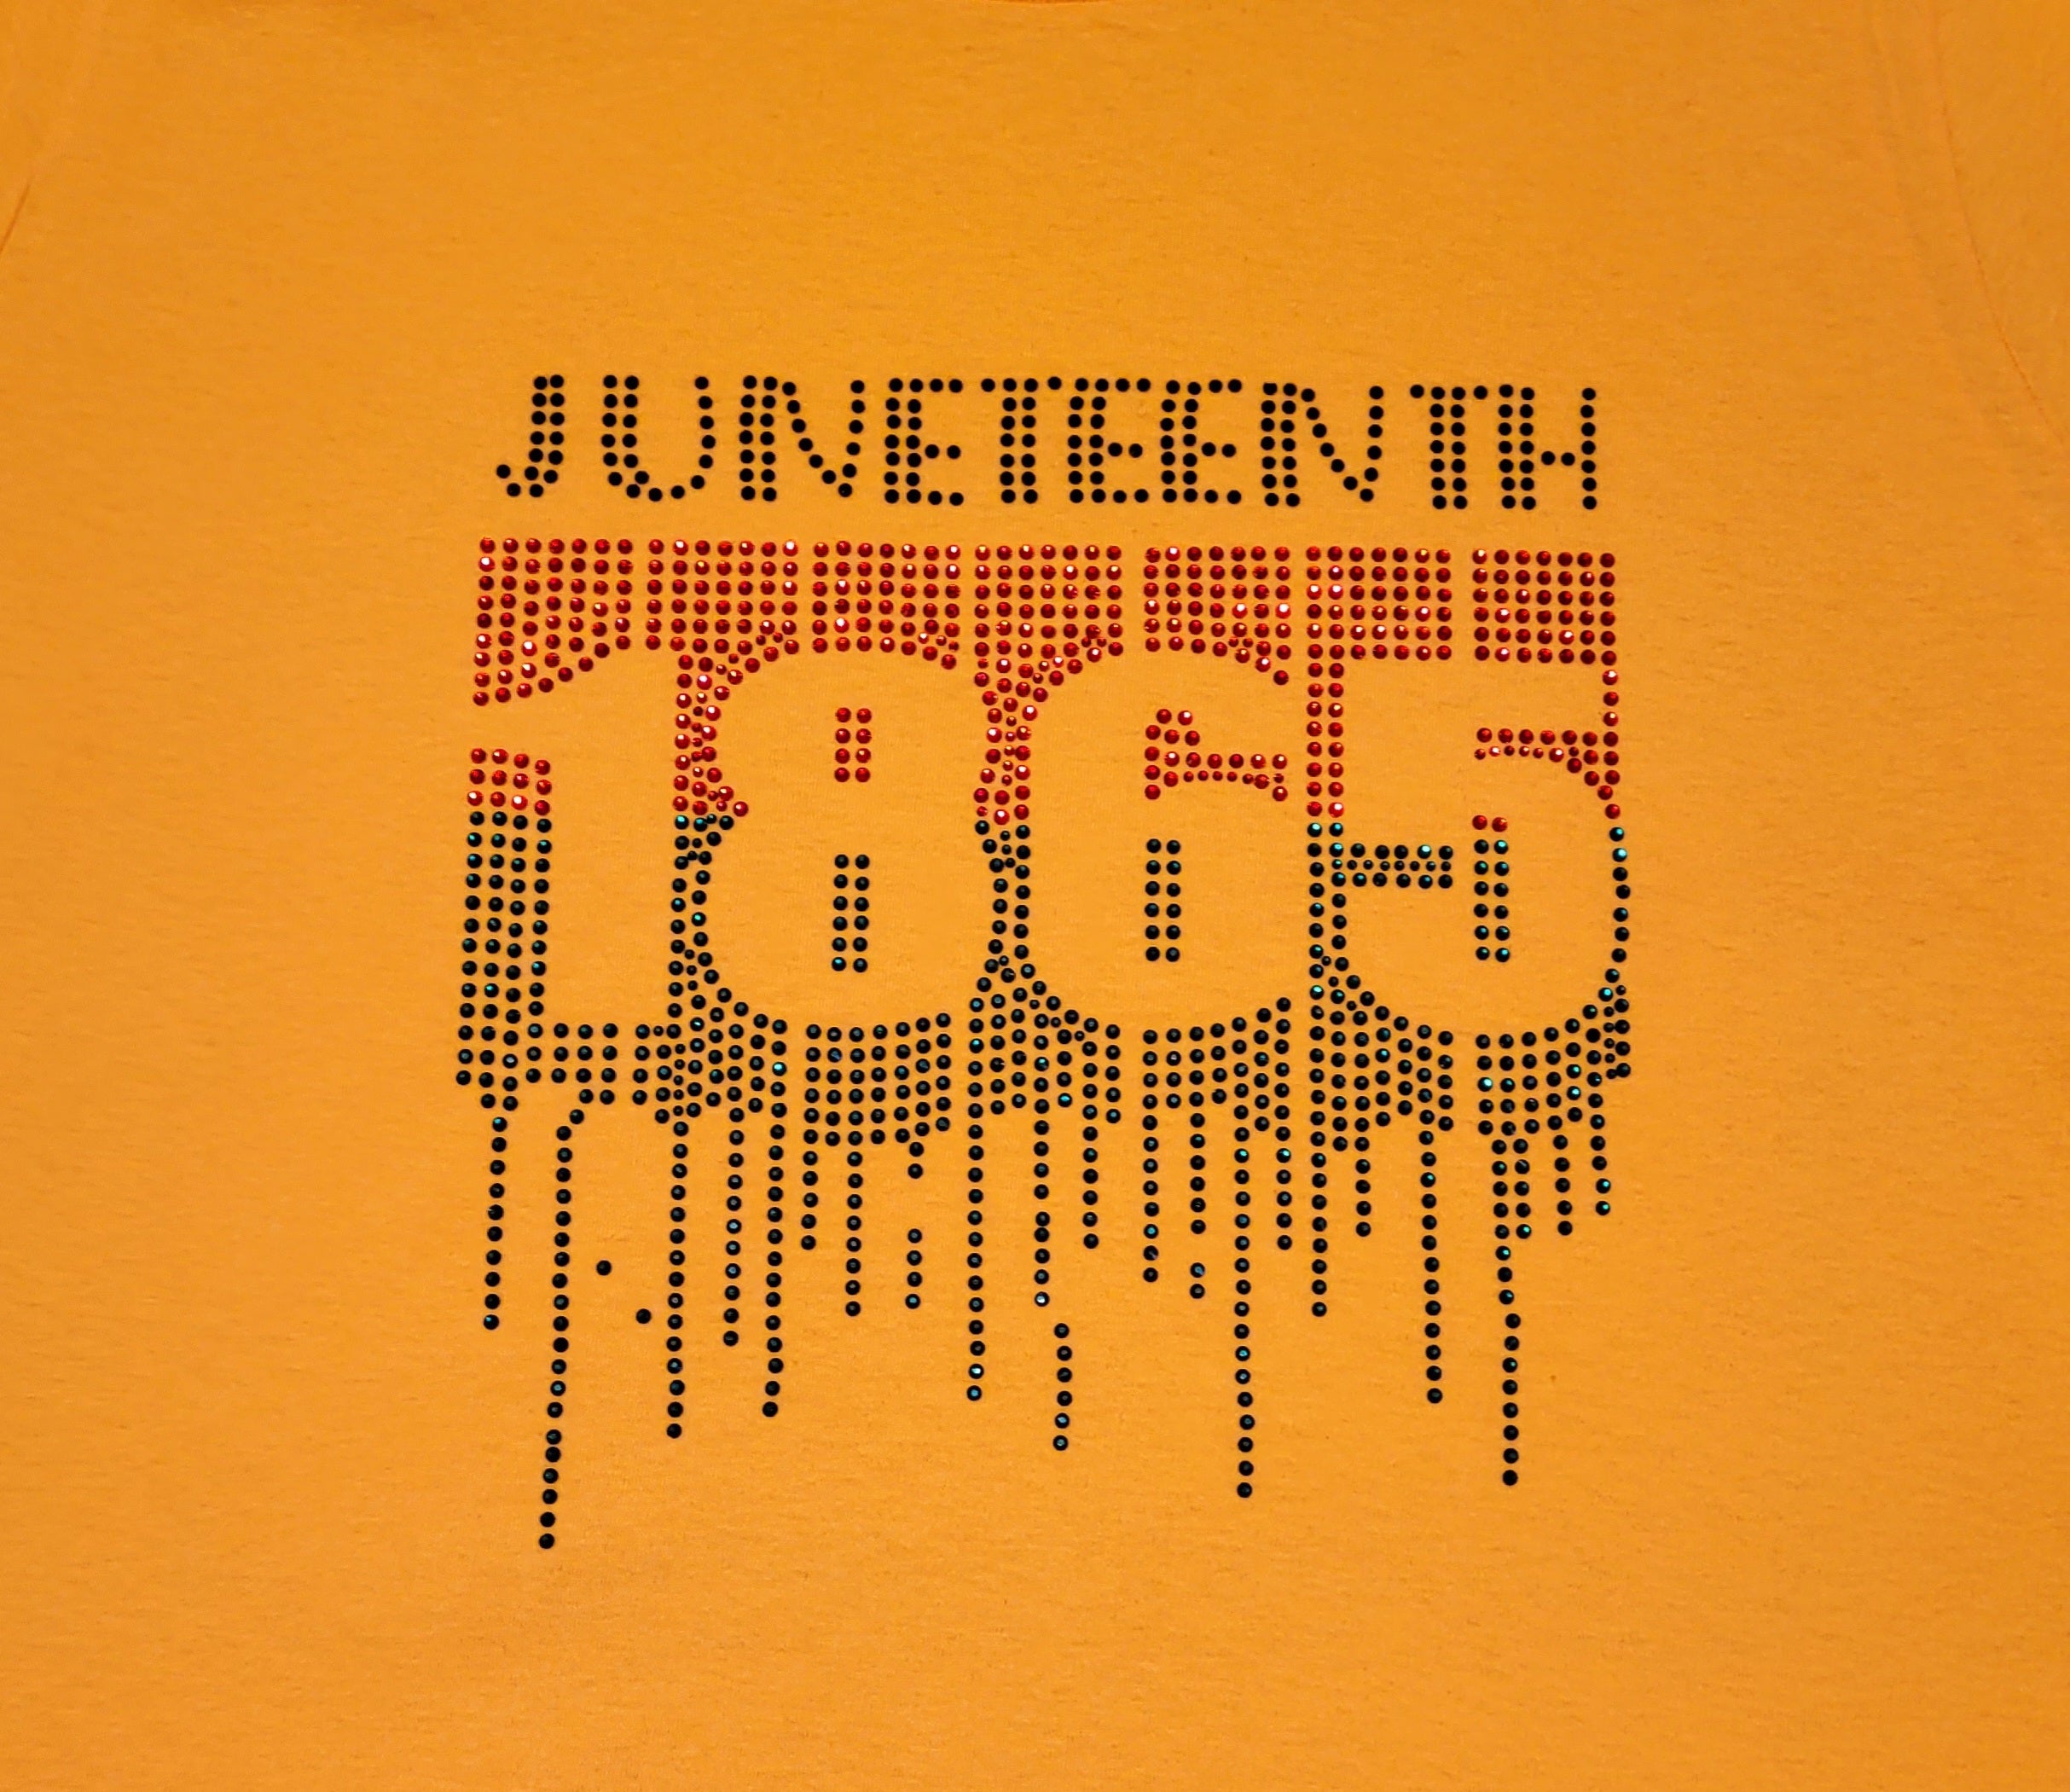 Juneteenth 1865